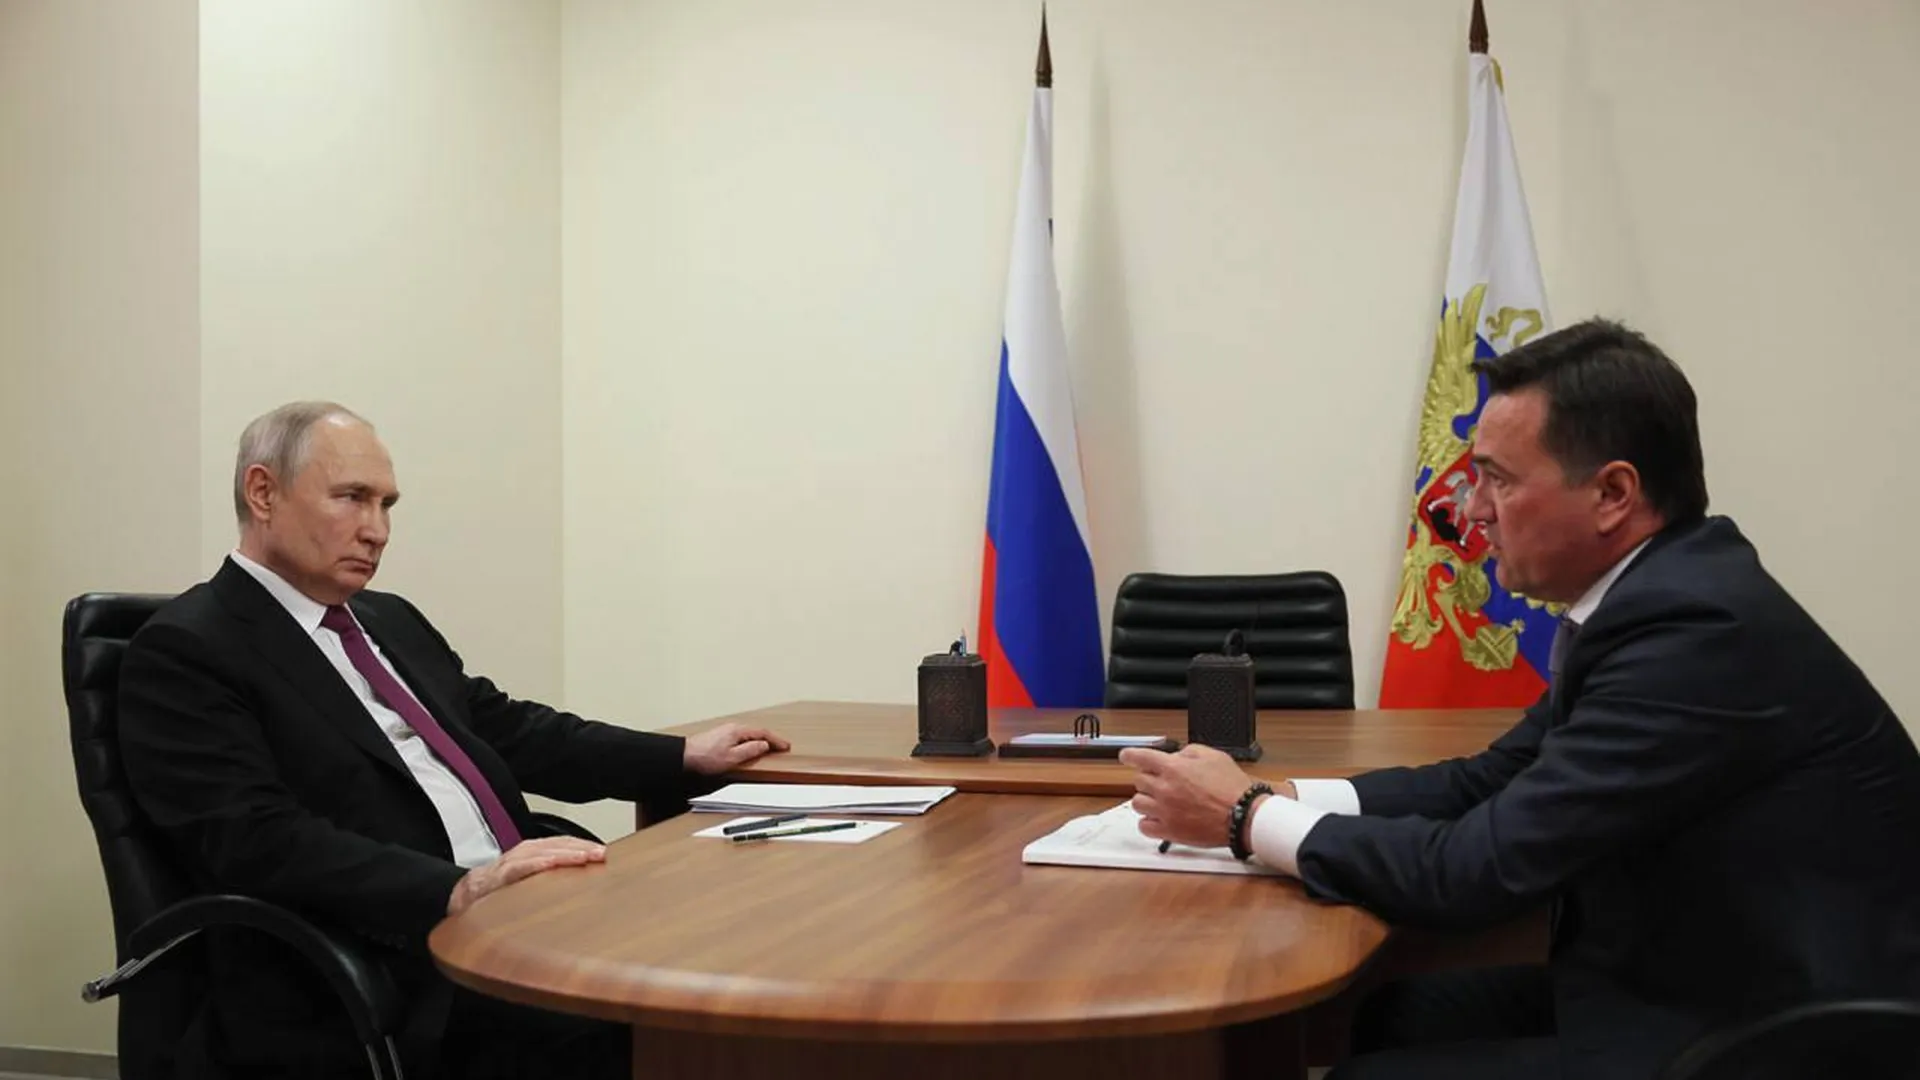 Воробьев на встрече с Путиным подчеркнул важность импортозамещения в Подмосковье